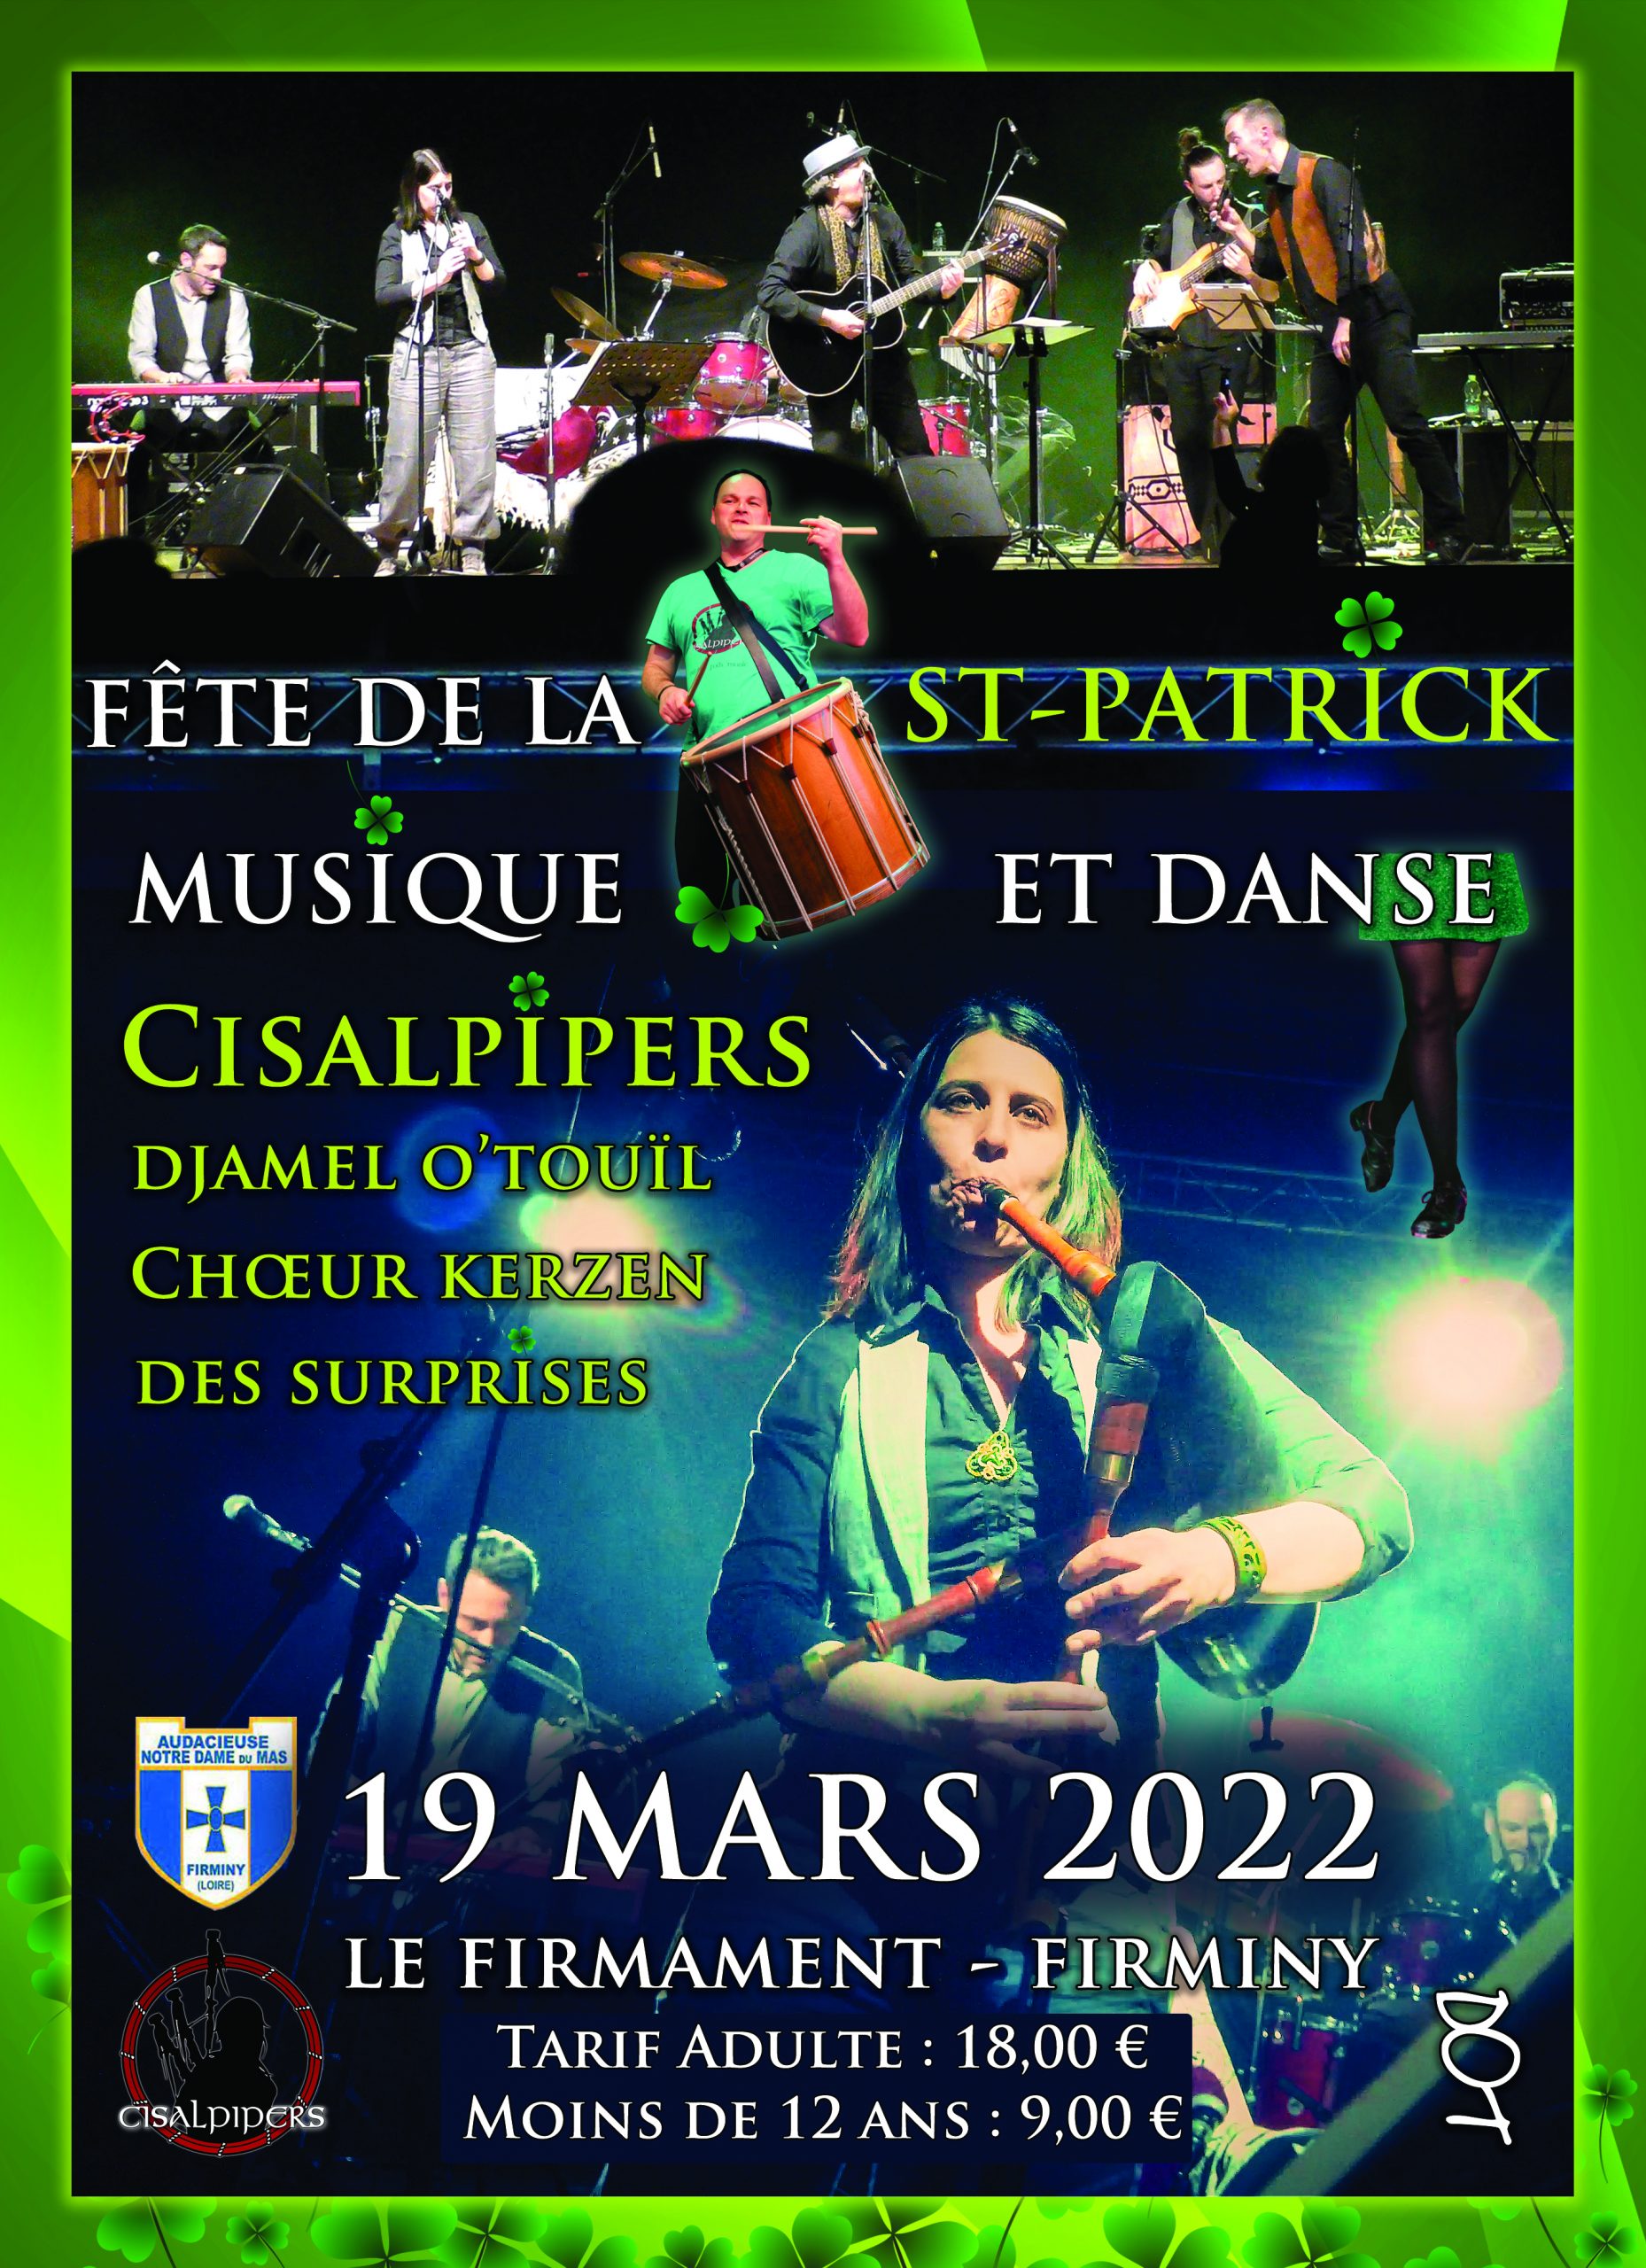 Soirée Musique et Danse pour fêter la Saint-Patrick 19 Mars 2022